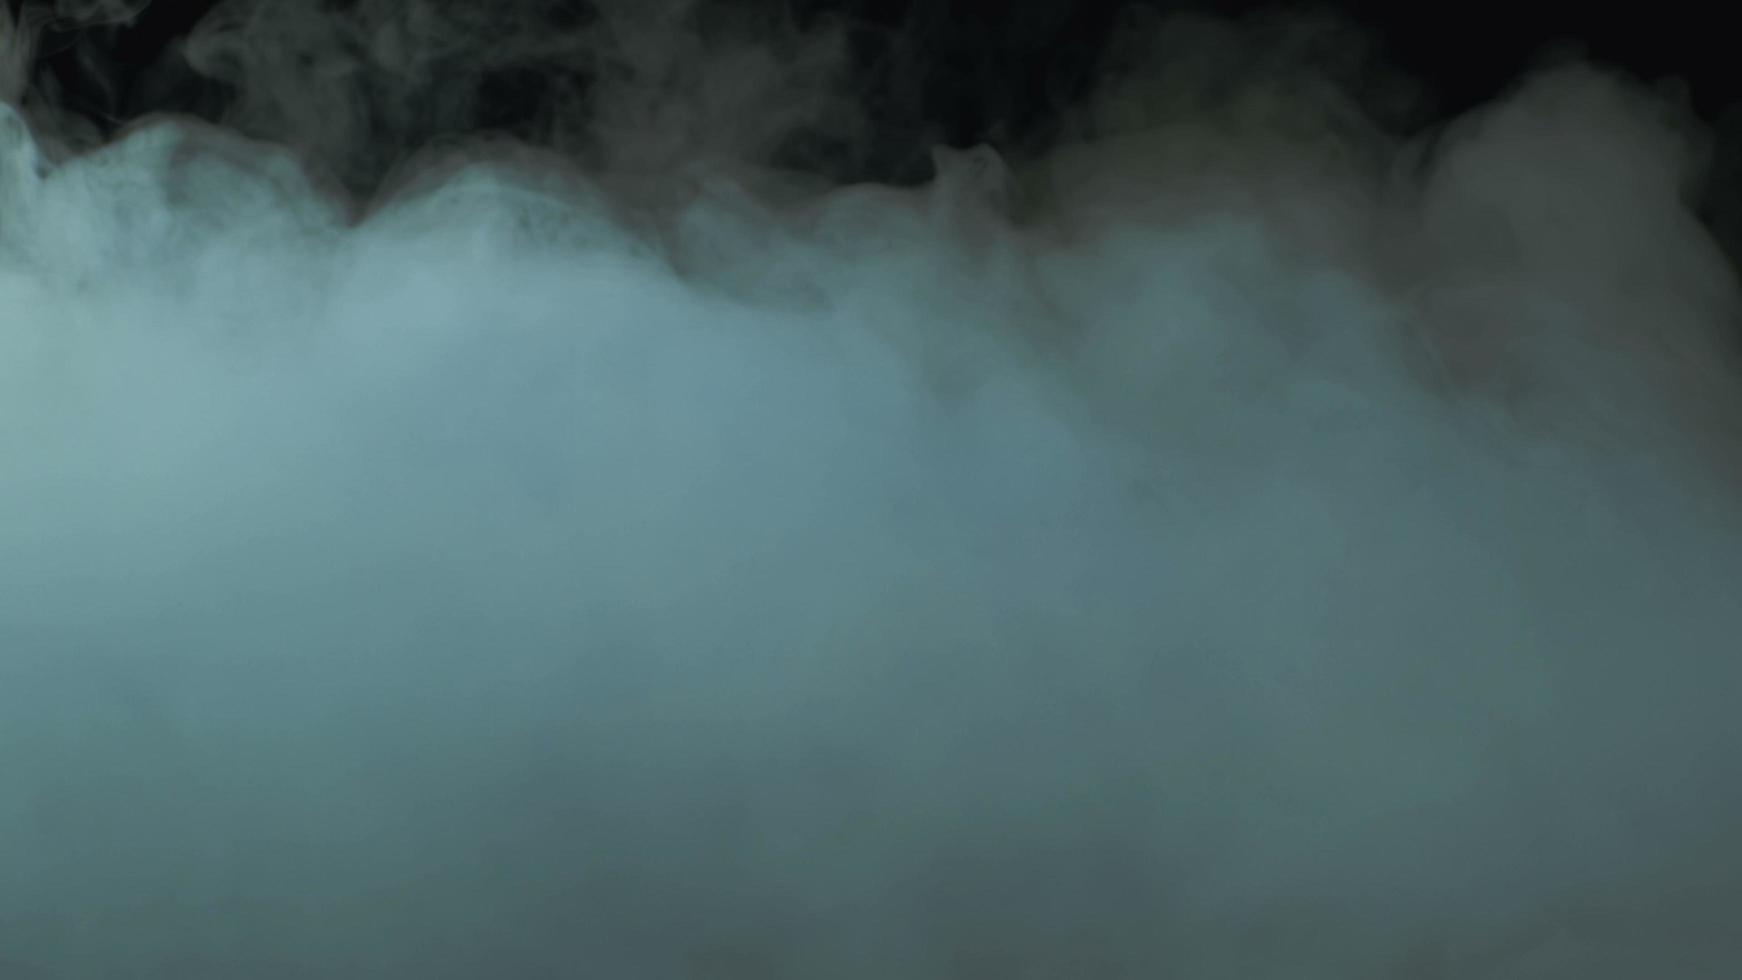 foto realistiche di nebbia di nuvole di fumo di ghiaccio secco per diversi progetti e così via.